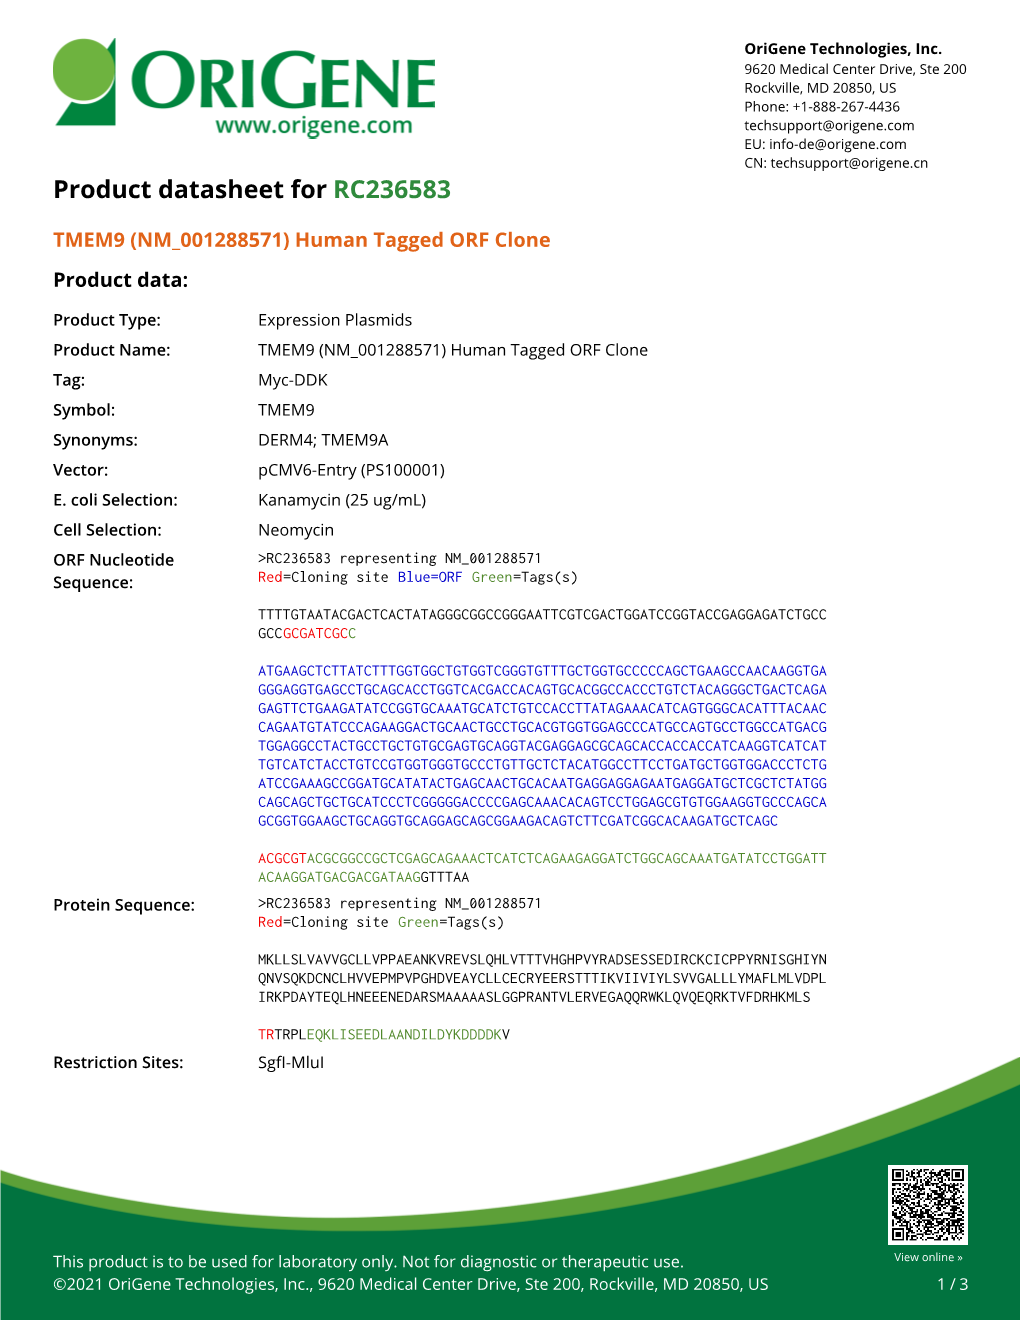 TMEM9 (NM 001288571) Human Tagged ORF Clone – RC236583